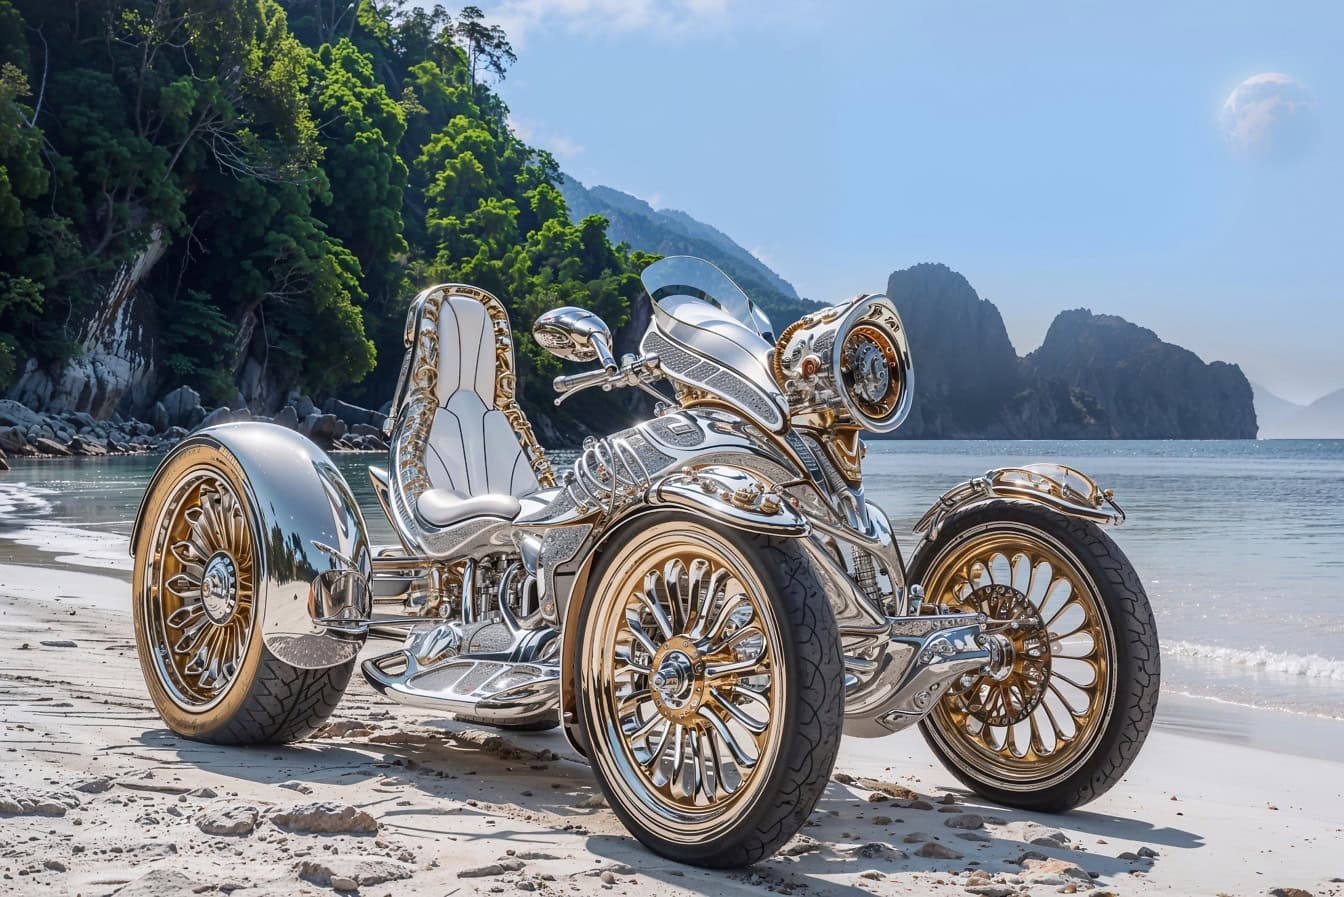 Futurisztikus koncepció egy luxus ezüst quad-motorkerékpárról a tengerparton